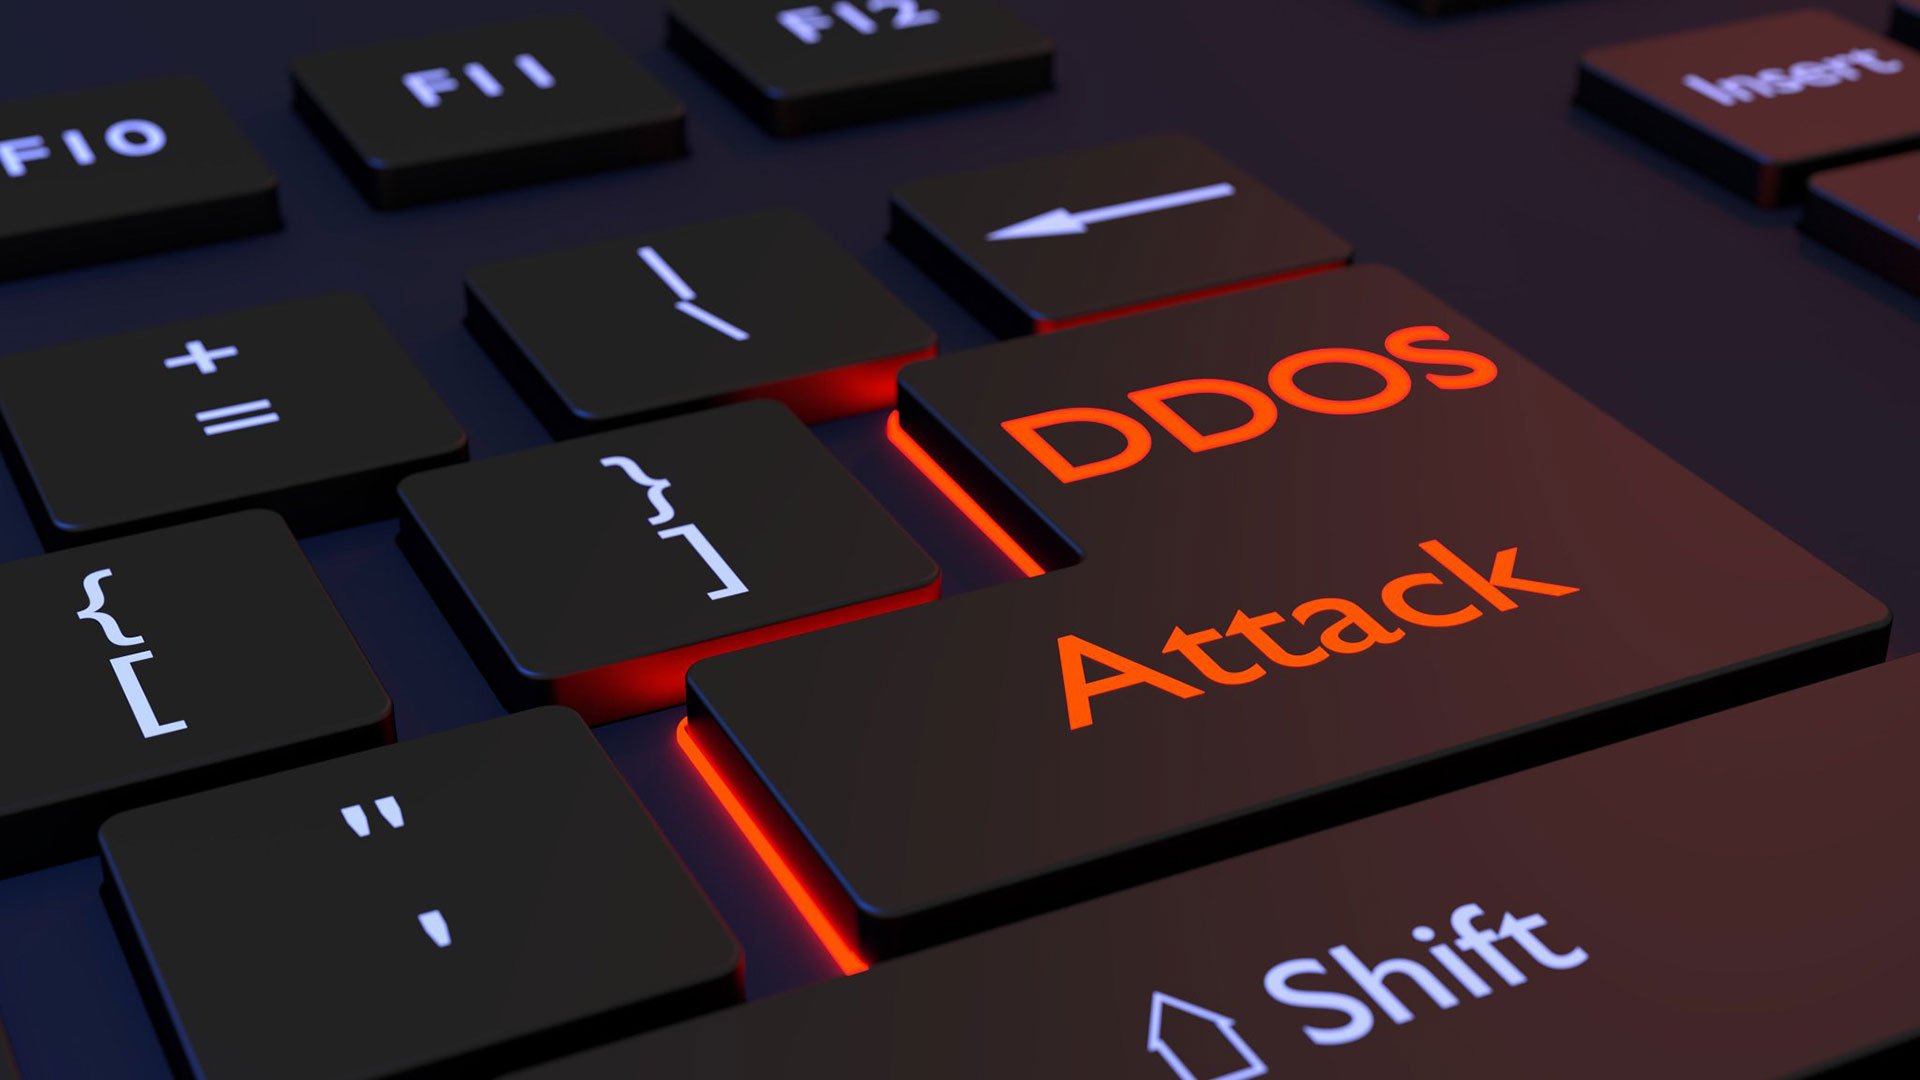 Mod_evasive no Apache oferece proteção contra ataque de DDoS